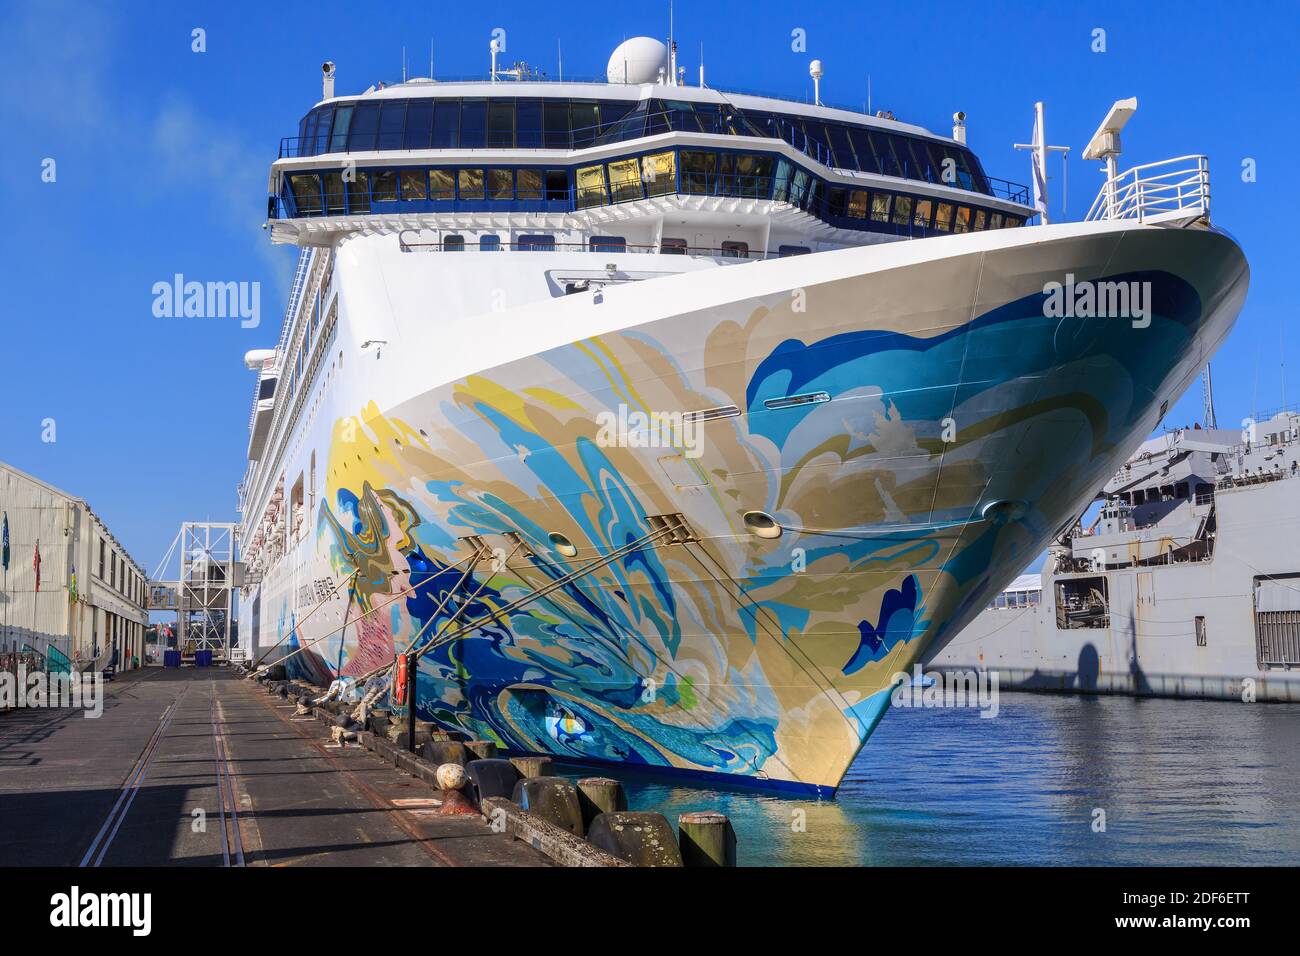 L'arc décoré du paquebot Dream Cruises, propriété de Hong Kong, est « Explorer Dream ». Photographié au port d'Auckland Banque D'Images